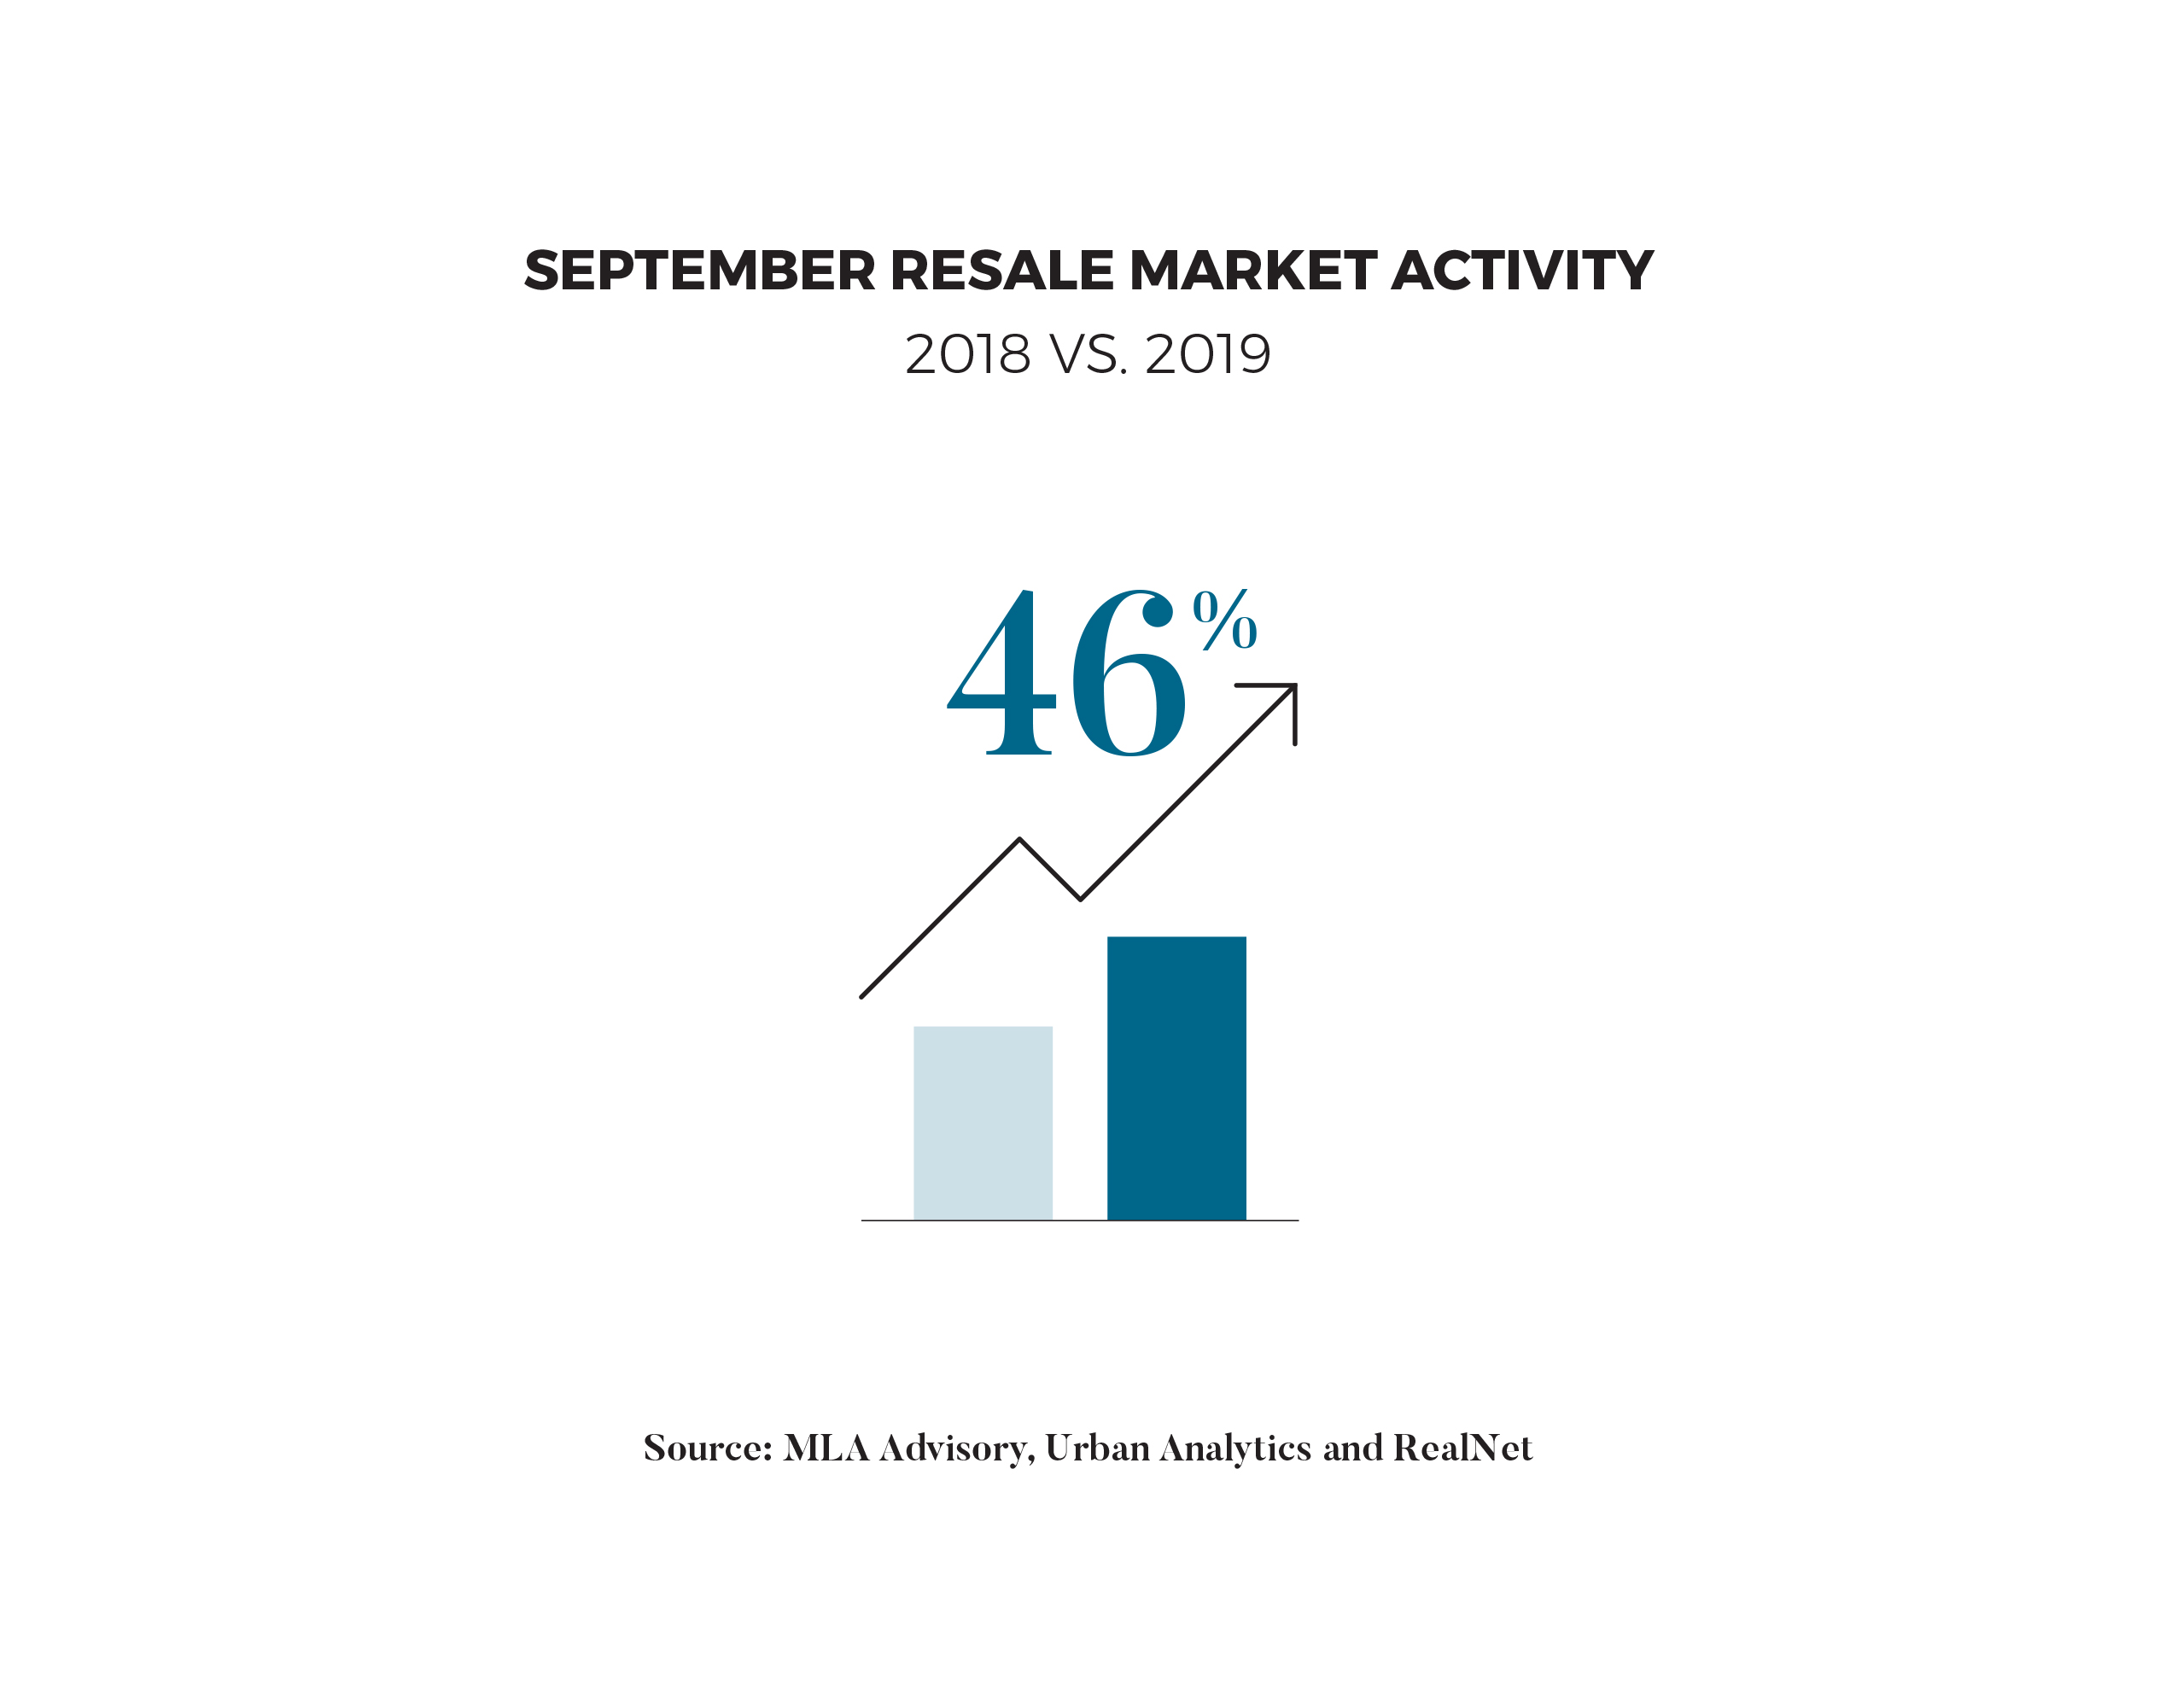 Increase in Sales September 2018 vs. 2019